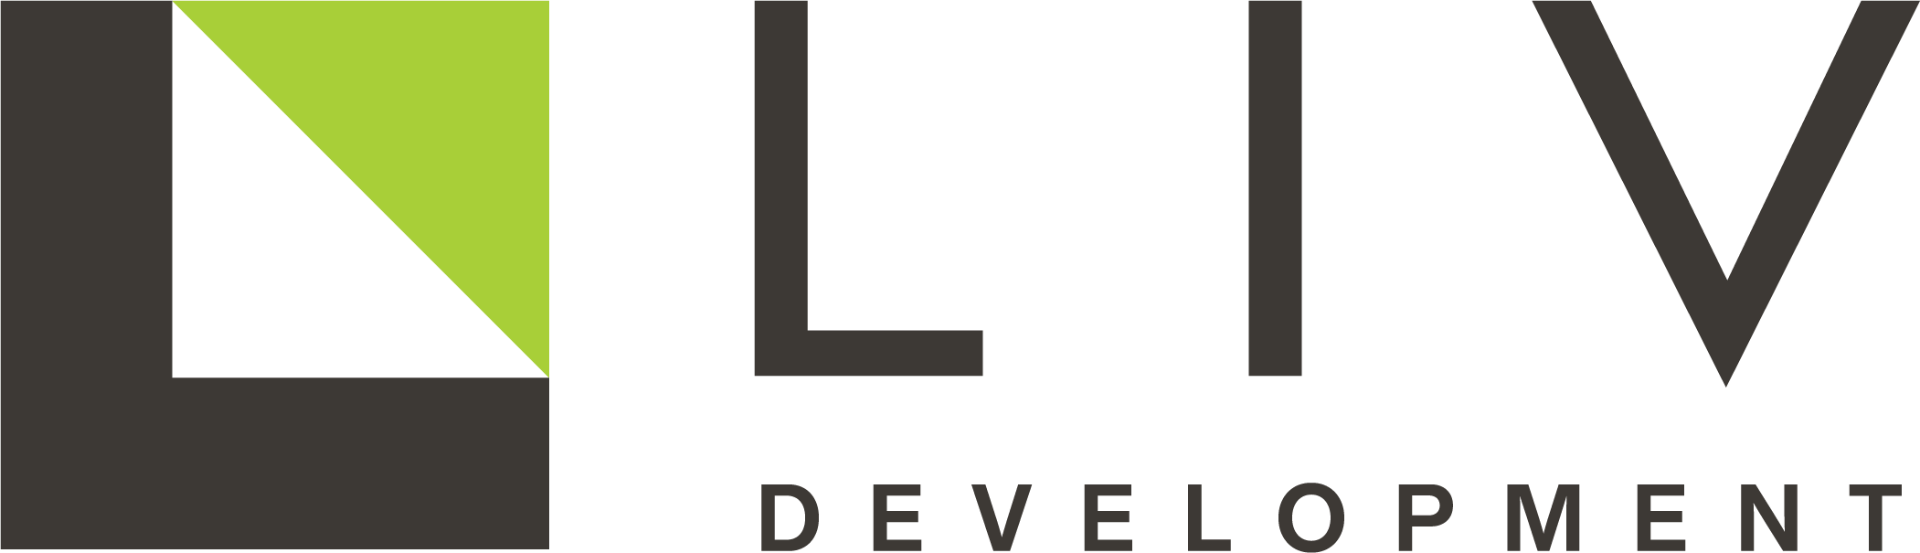 LIV Development